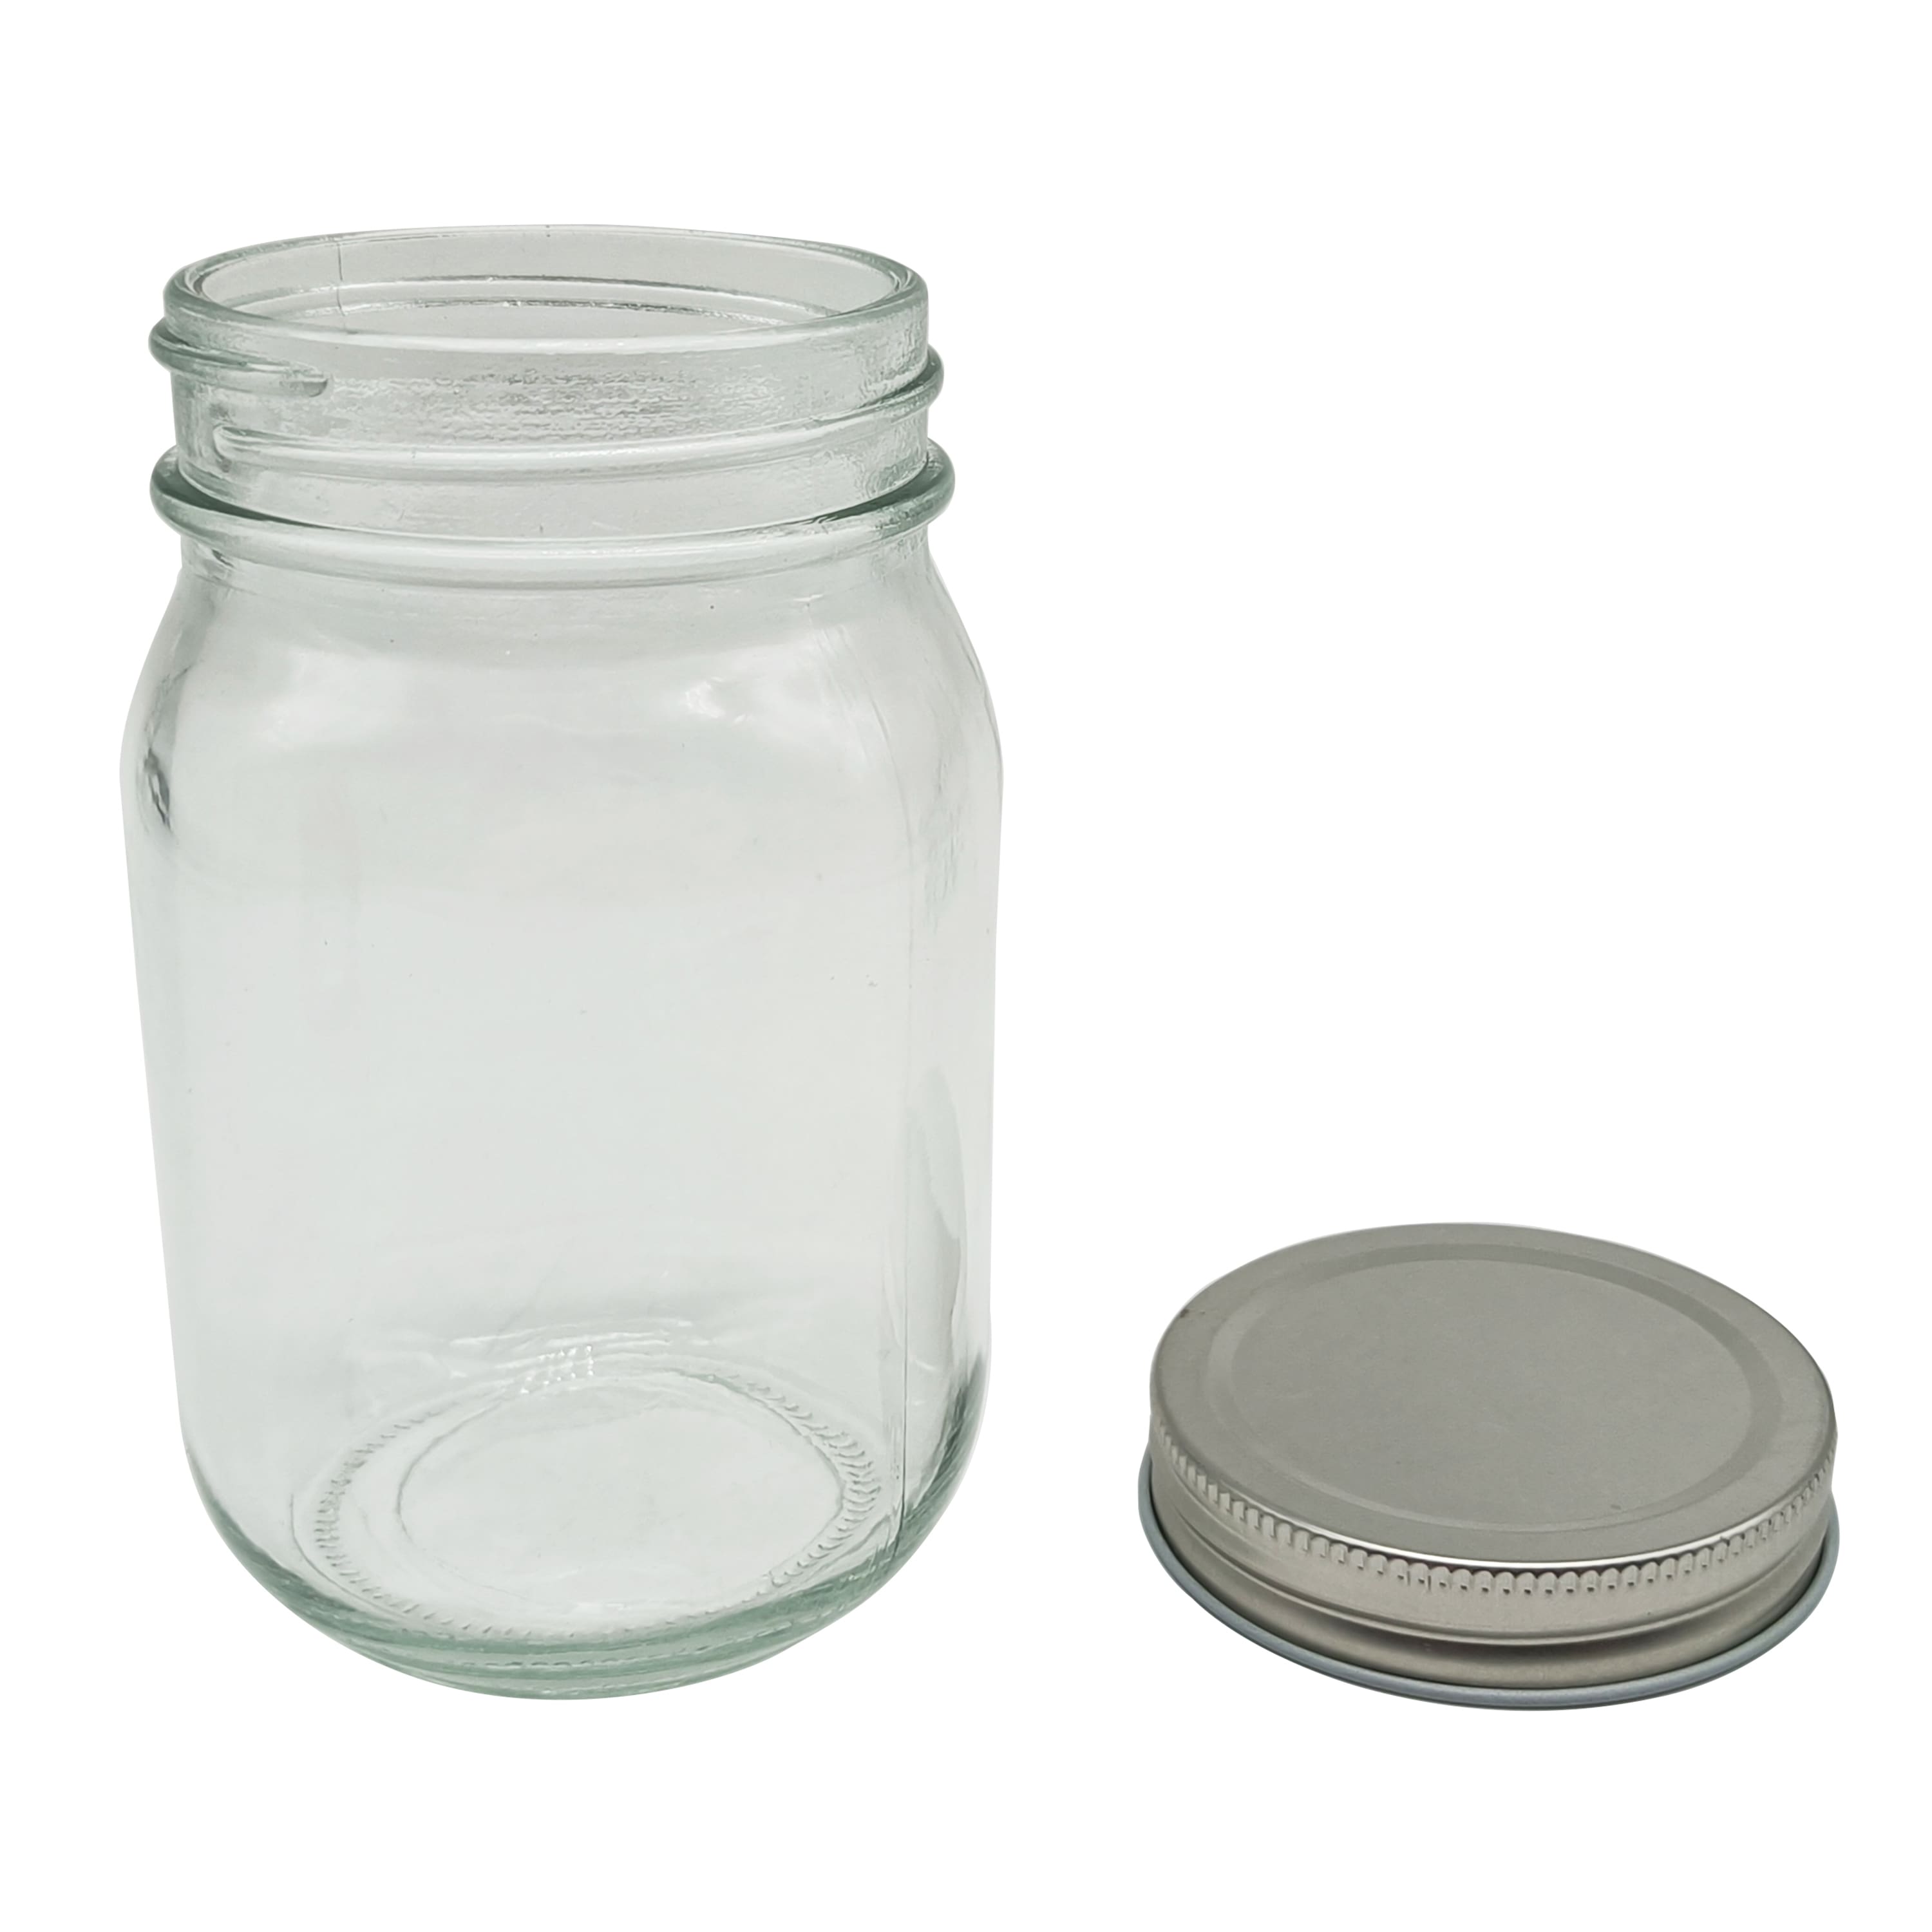 6 Packs: 12 ct. (72 total) 16oz. Glass Jar by Ashland&#xAE;